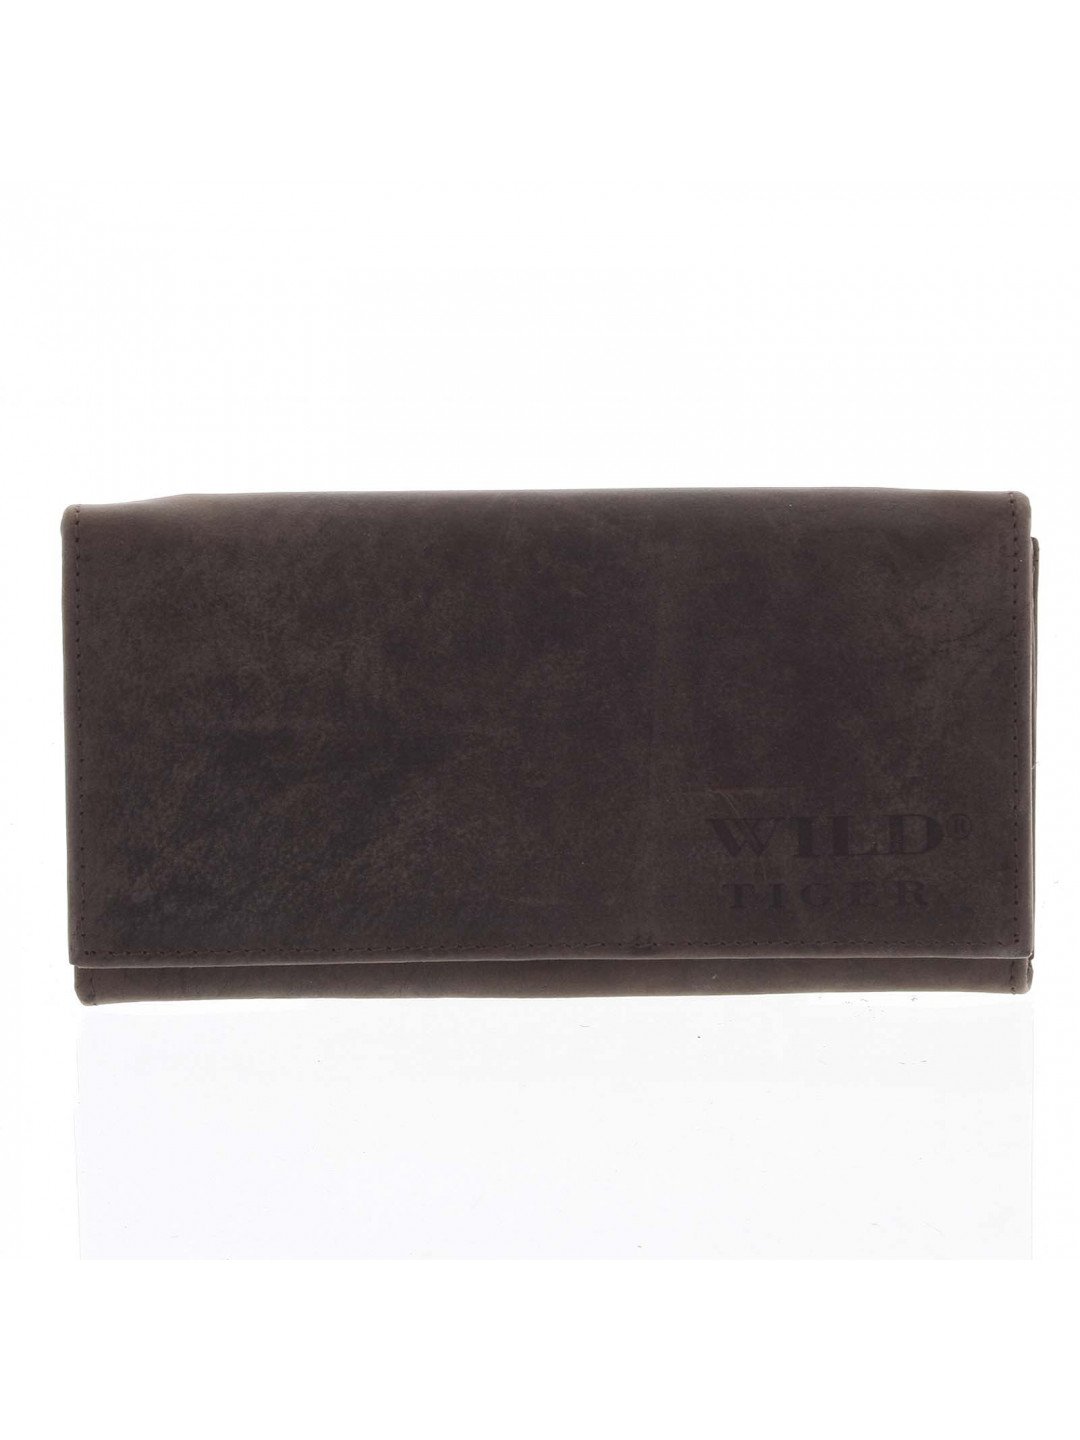 Dámská kožená peněženka tmavě hnědá – WILD Nataniela